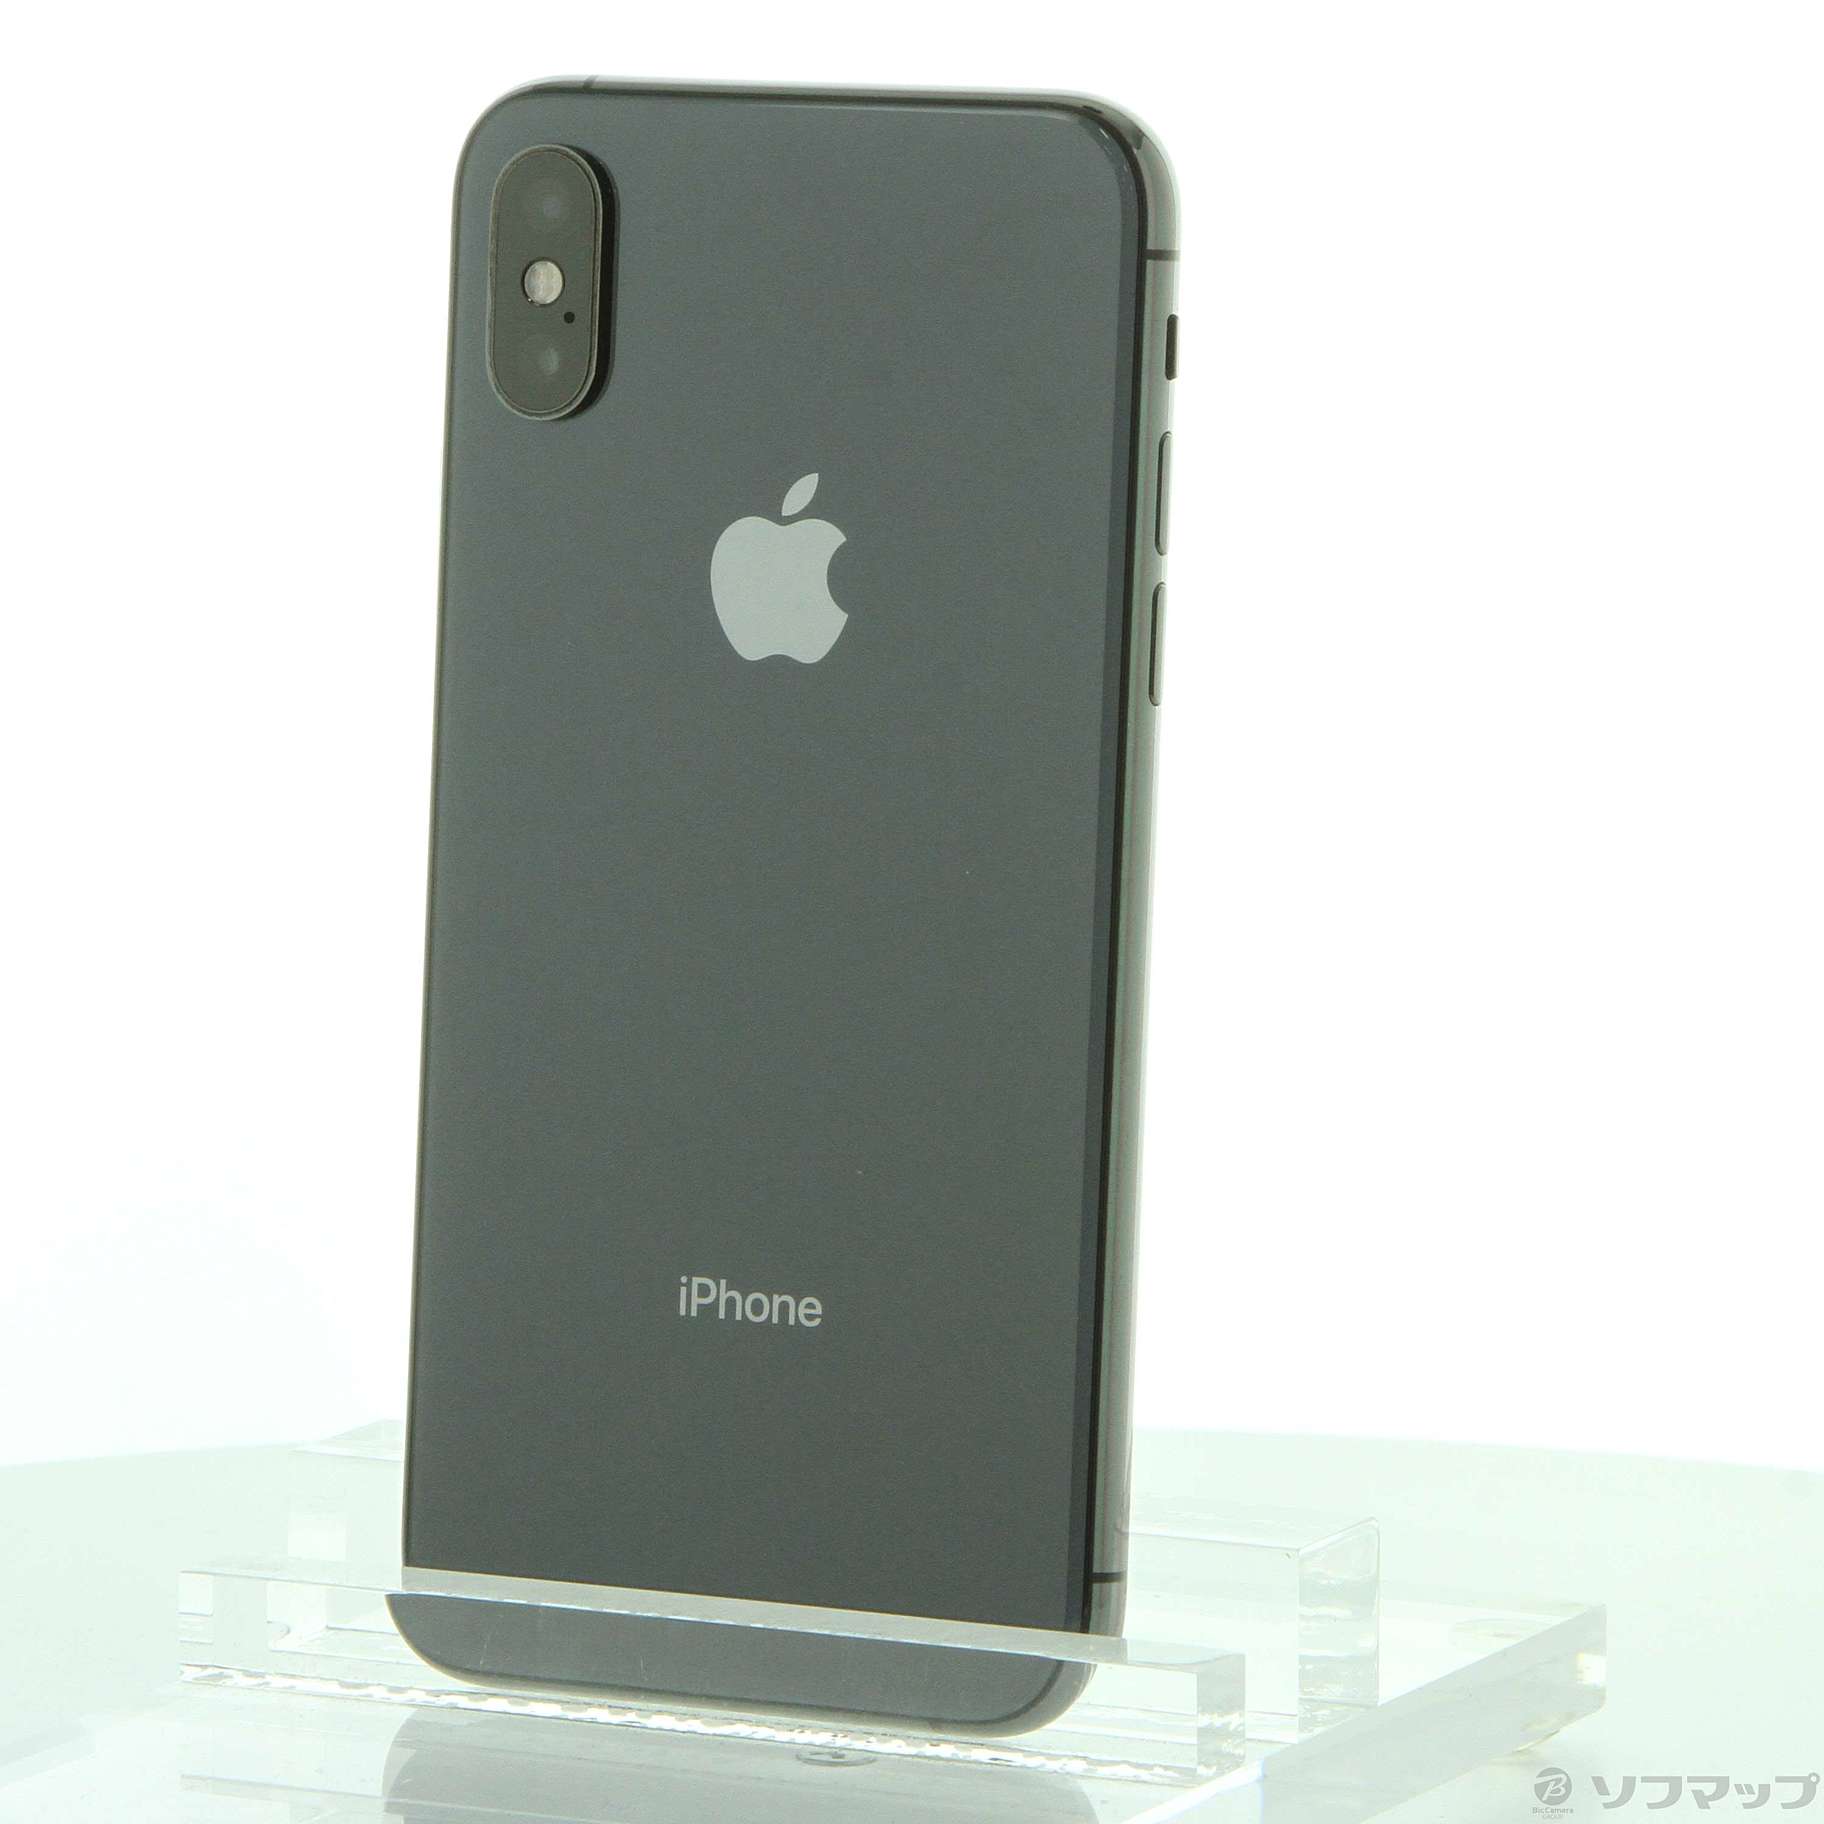 9,366円【美品】iPhoneXS スペースグレイ 256GB SIMフリー